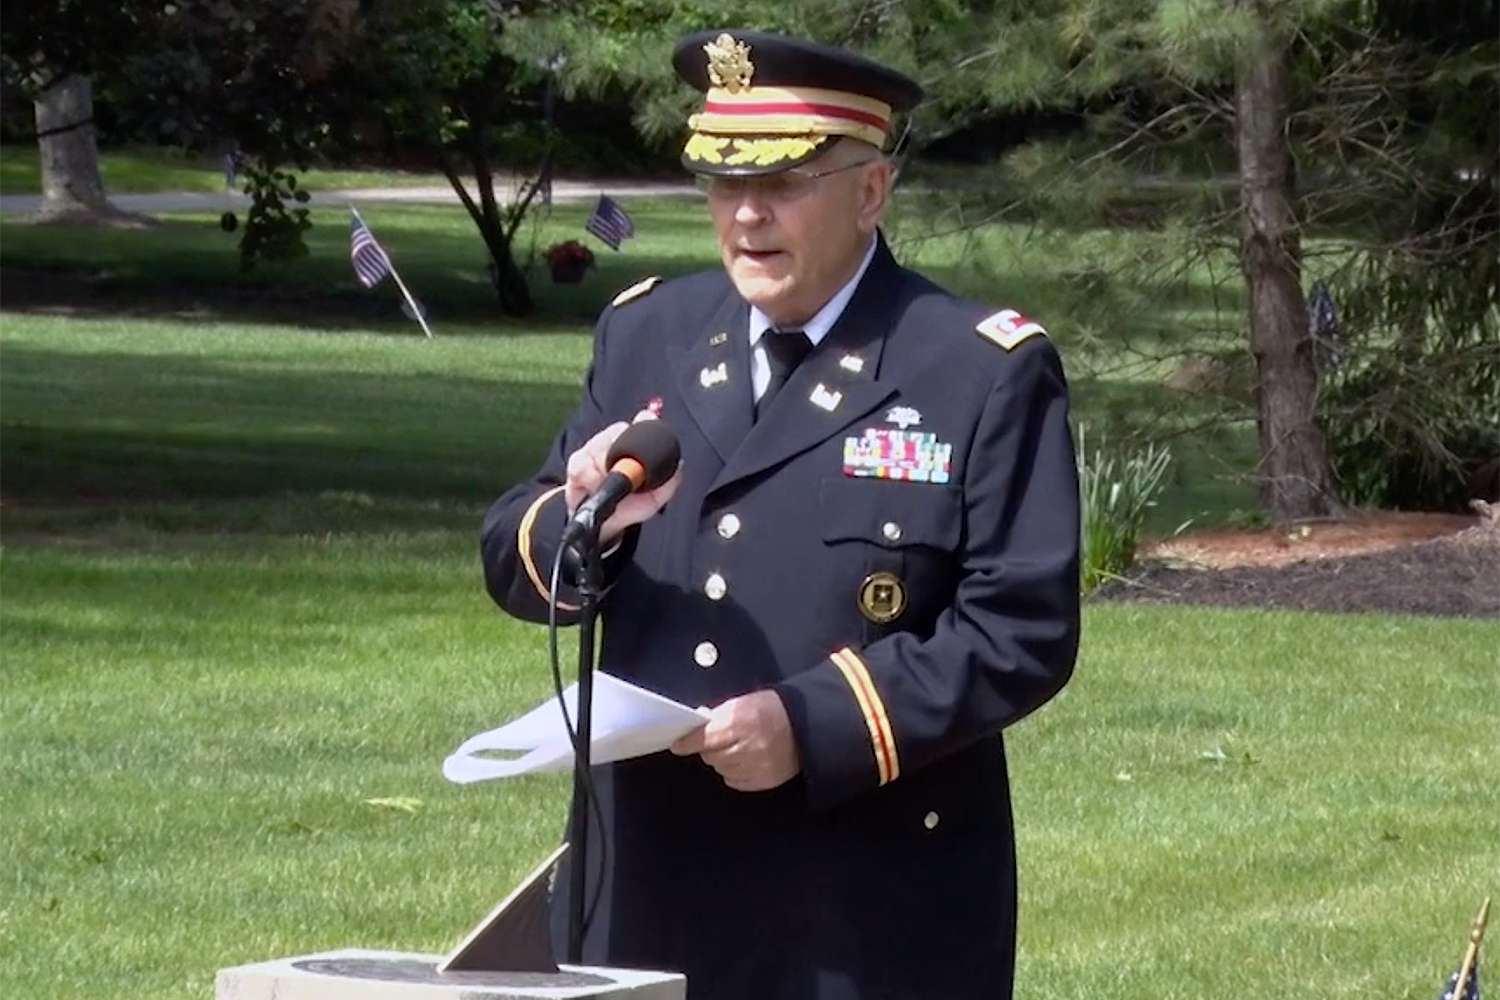 Retired Army Lt. Col. Barnard Kemter